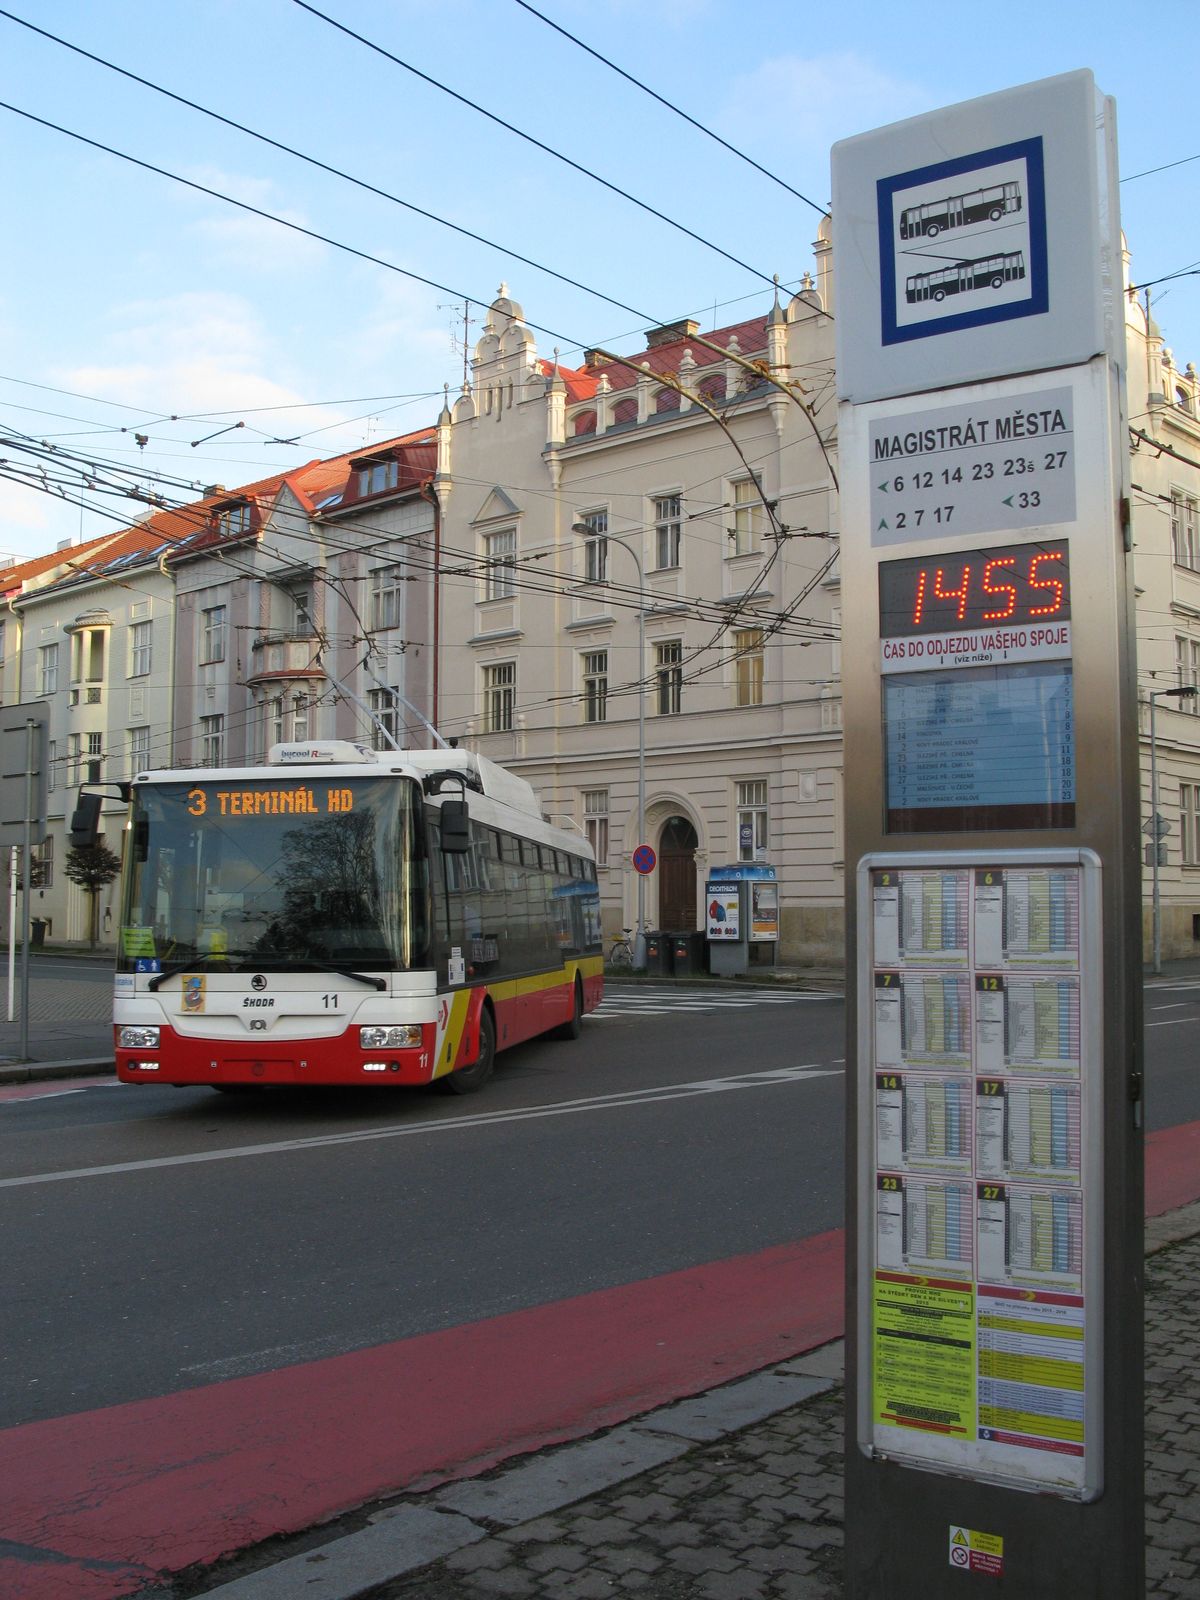 První hradecký trolejbus s karoserií SOR z roku 2010 odboèuje poblíž zastávky Magistrát mìsta, kde se nachází elektronický oznaèník s aktuálními odjezdy nejbližších spojù i velkými digitálními hodinami. Tudy objíždí historické jádro Hradce vìtšina i autobusových trolejbusových linek.